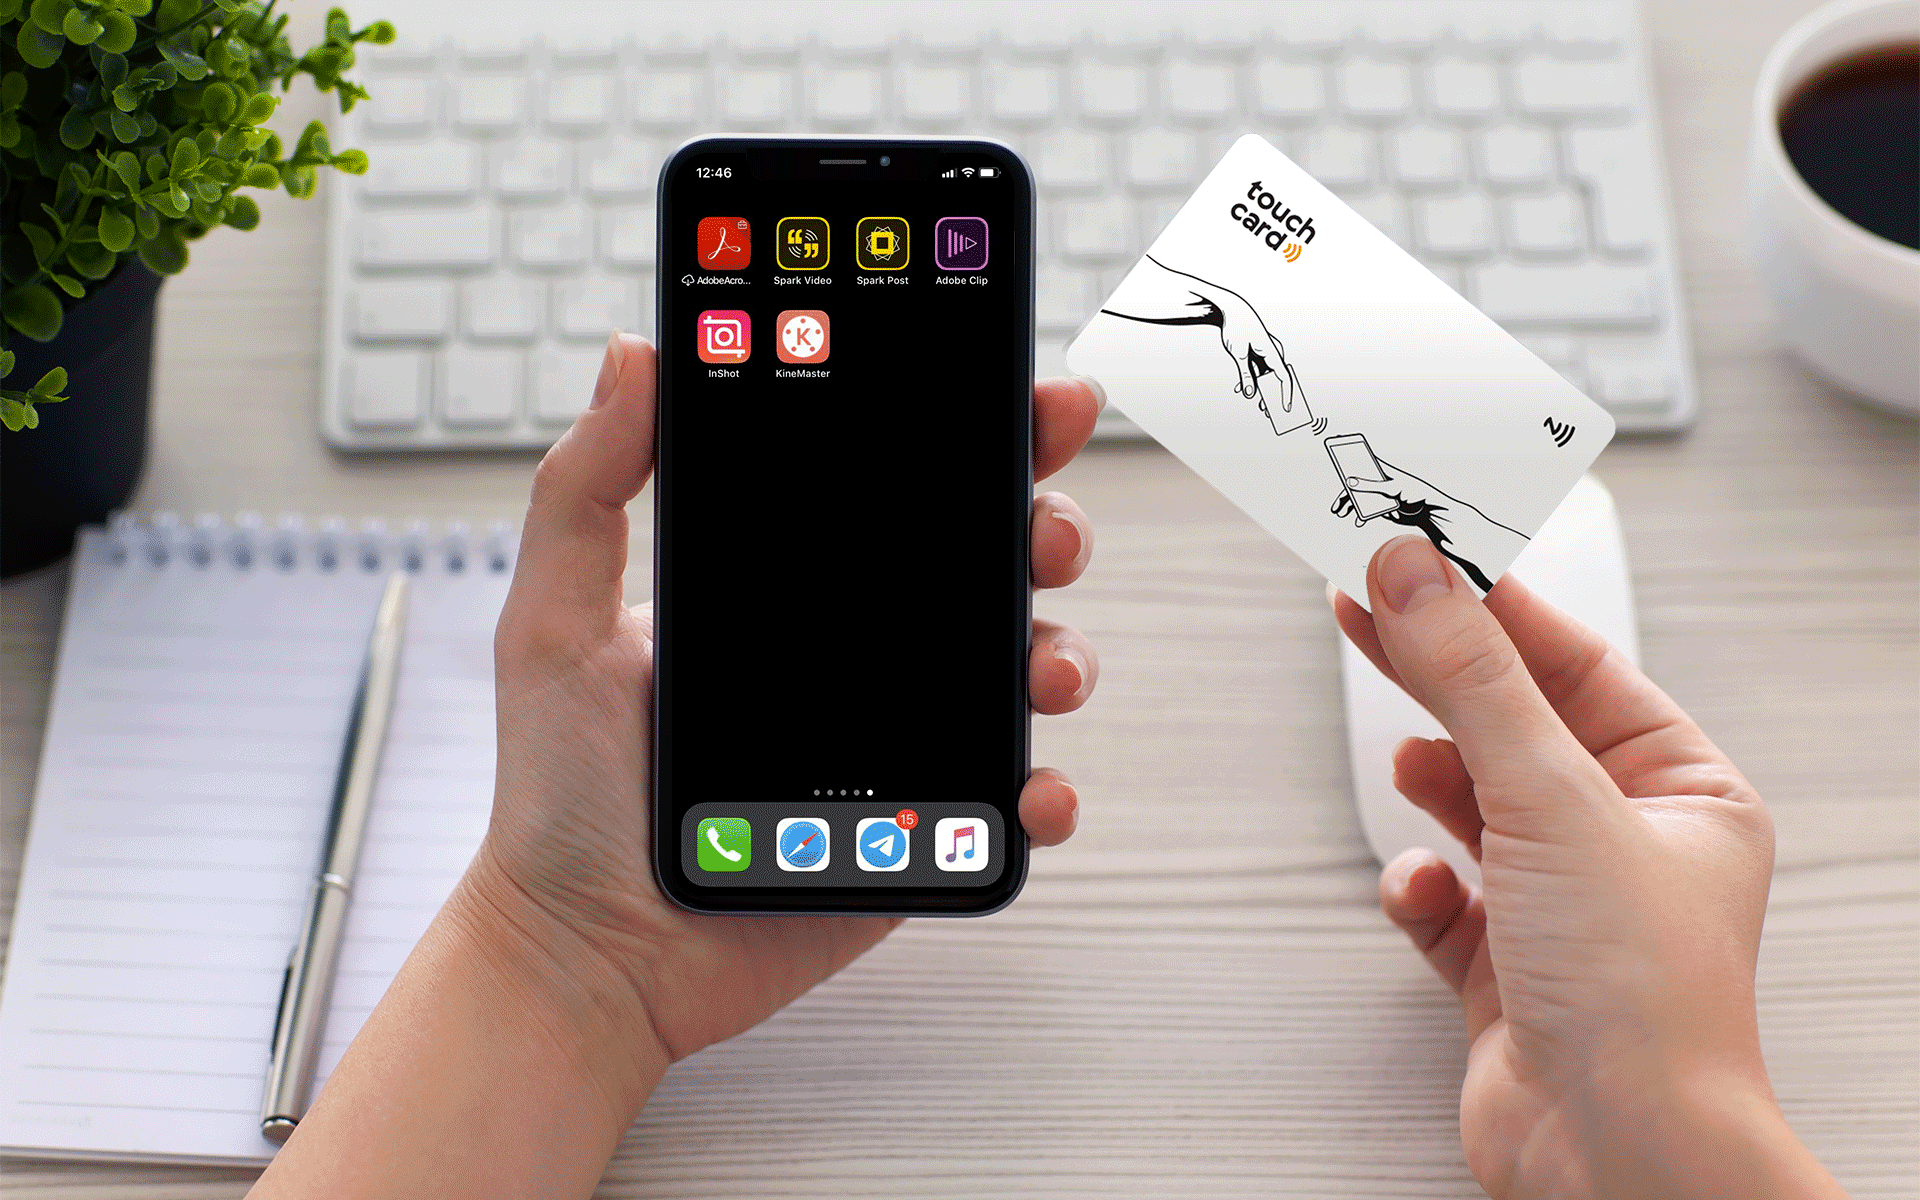 На GIF-изображении показано как пользователь прикладывает NFC-визитку к смартфону и на нем открывается в браузере электронная визитная карта